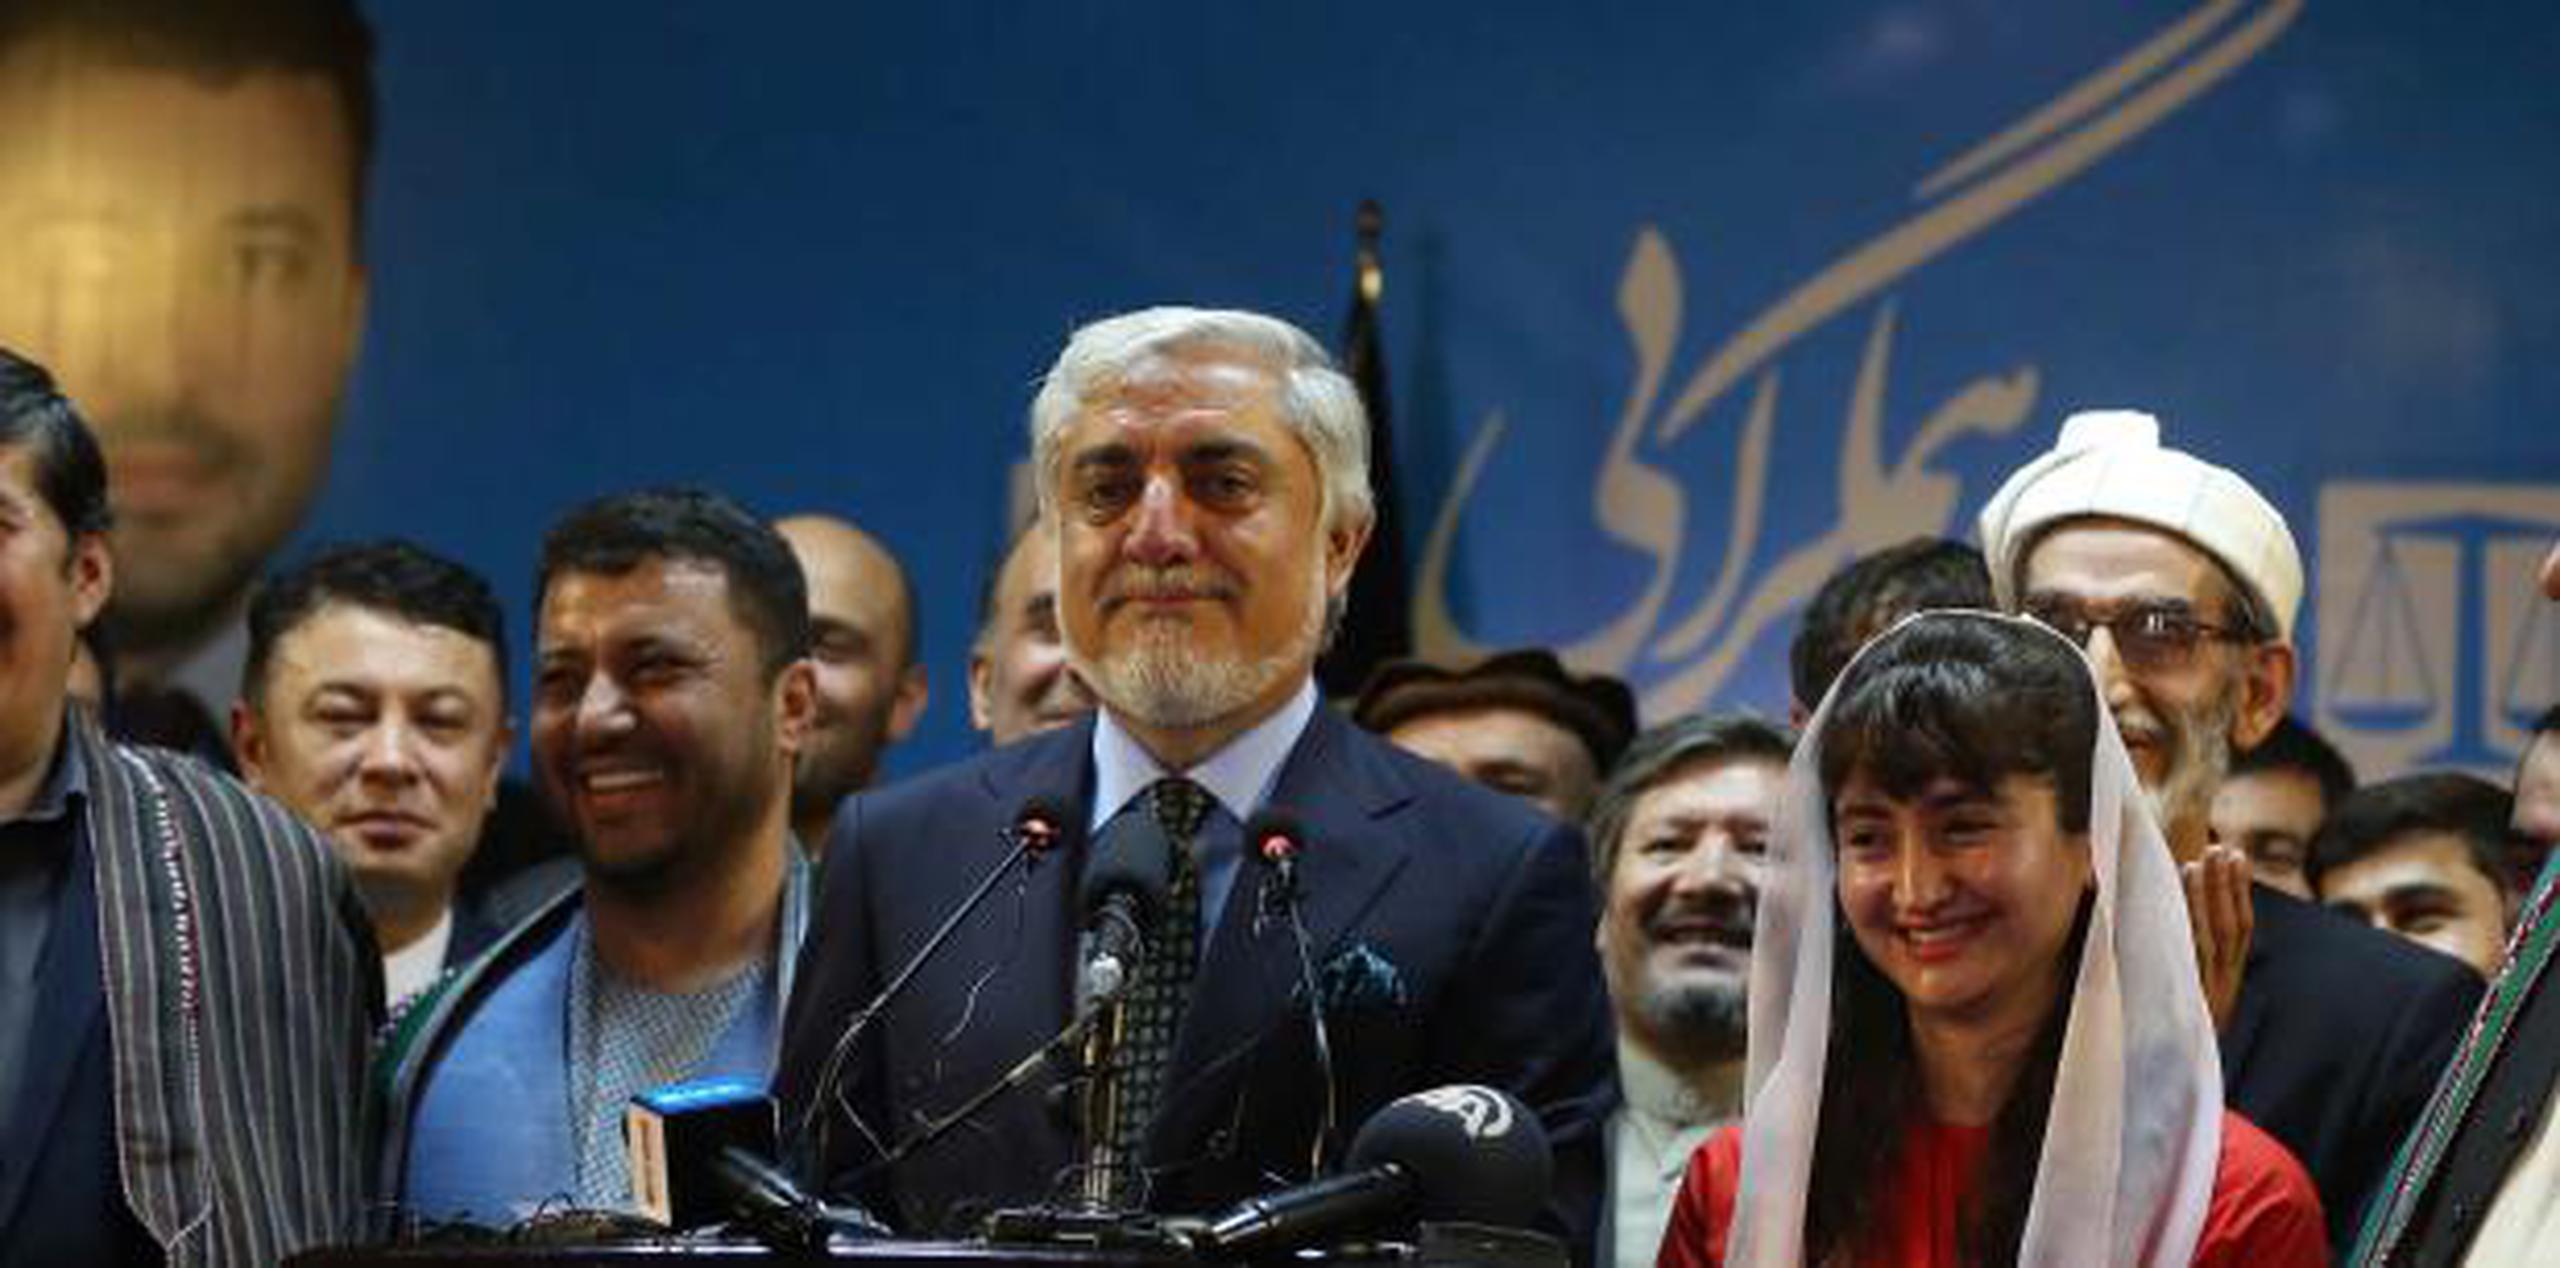 El candidato Abdullah Abdullah proclama su victoria en las elecciones afganas. (EFE)

